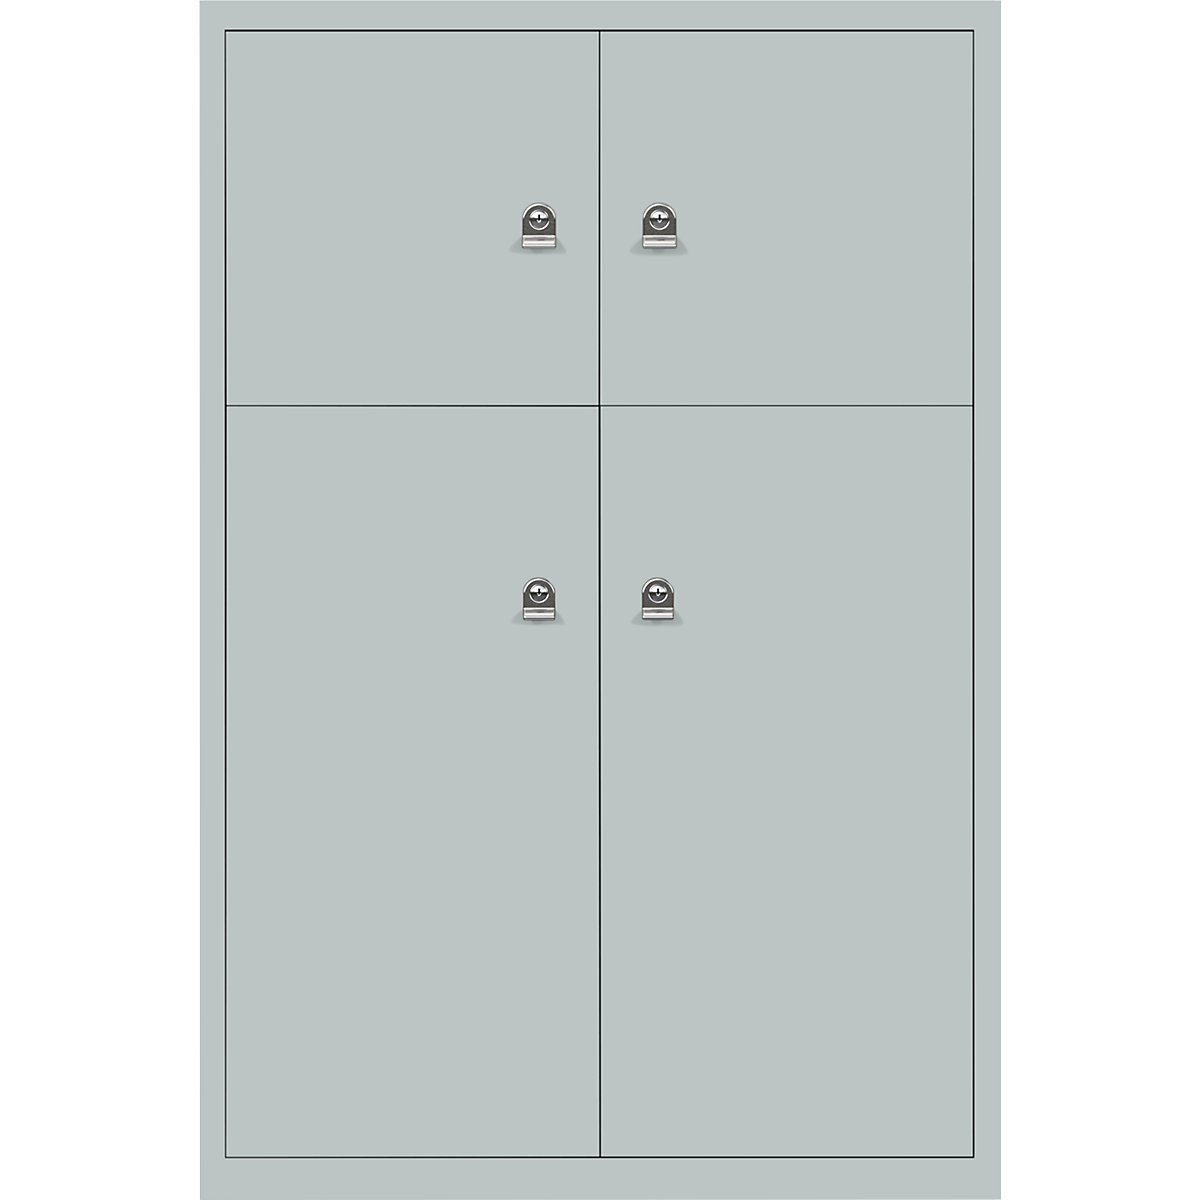 Omara s predelki z zaklepanjem LateralFile™ – BISLEY, 4 predelki z zaklepanjem, višina 2 x 375 mm, 2 x 755 mm, srebrne barve-24